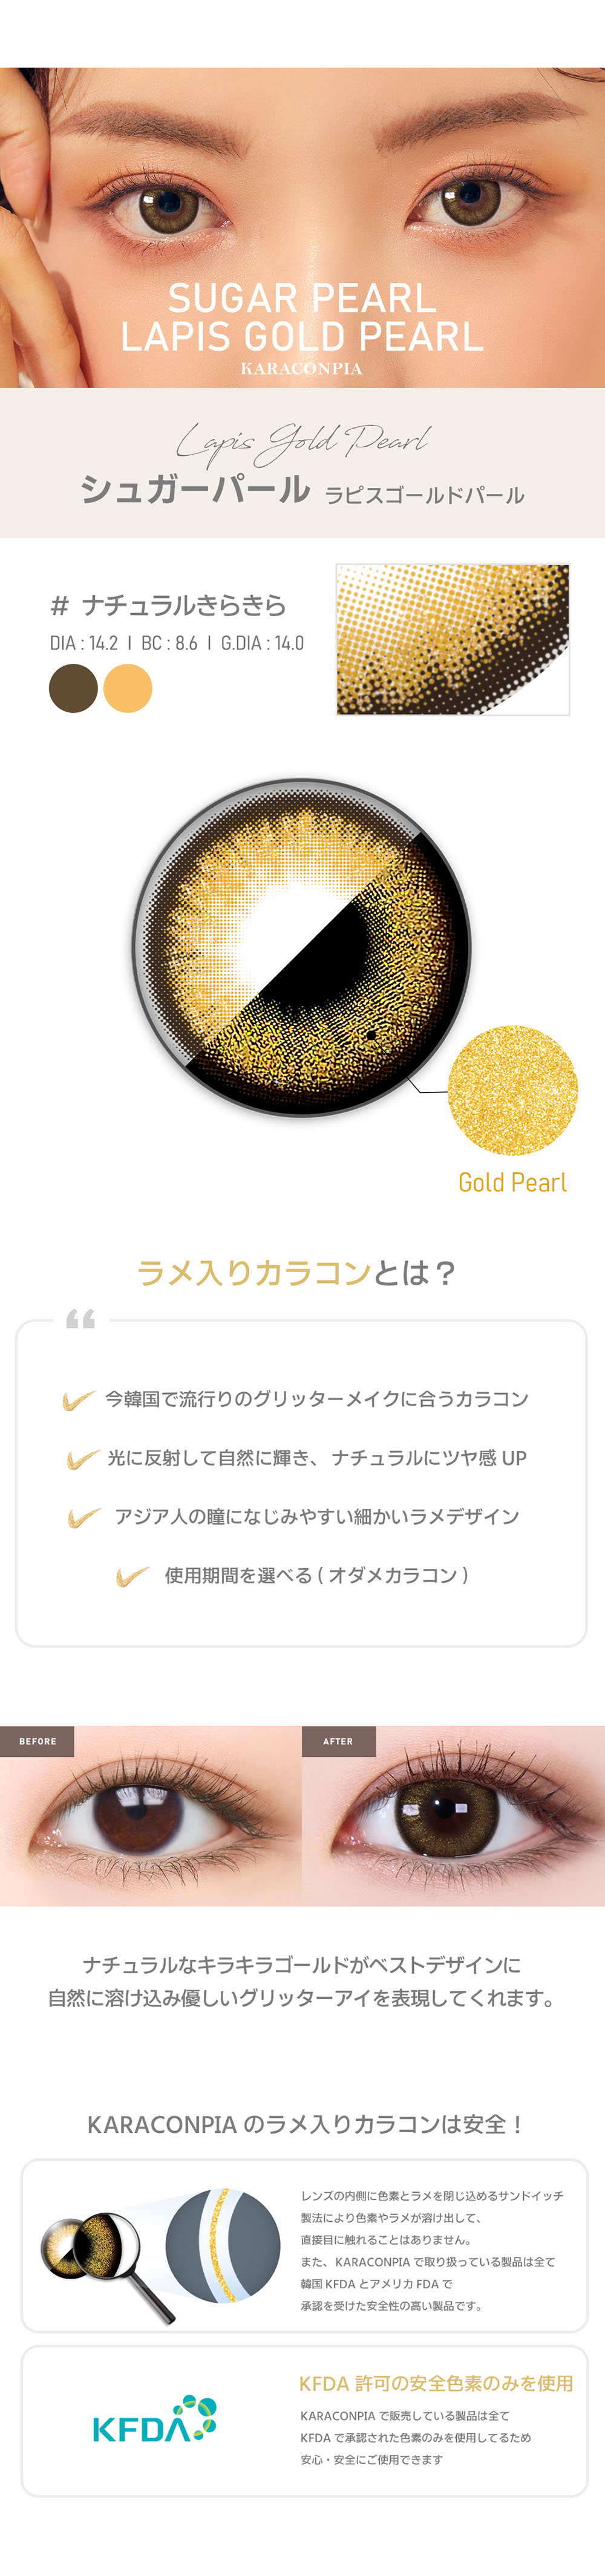 【オダメ】ラピスゴールドパール(Sugar pearl Lapis Gold Pearl)